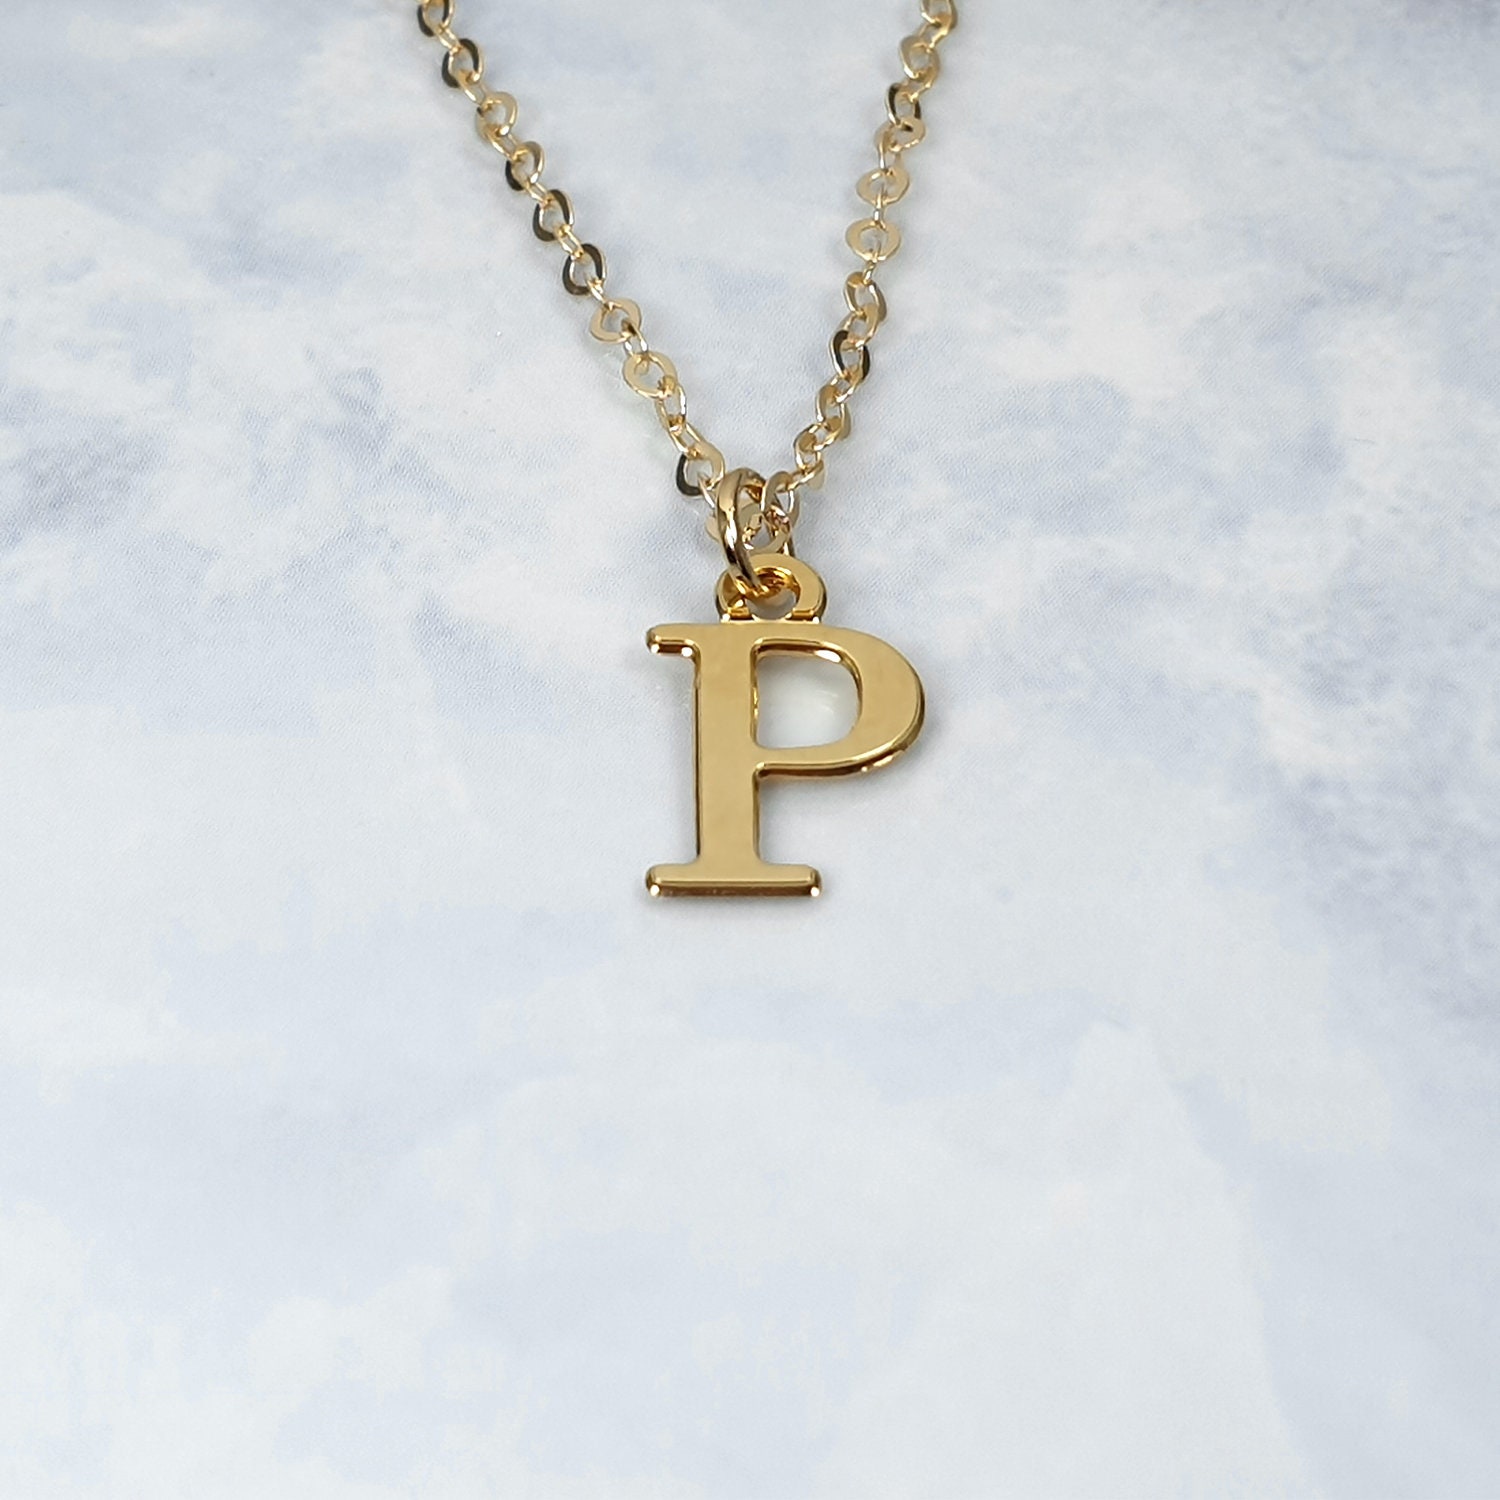 Gold Initial Kette mit Buchstabe P oder buchstabe | Etsy Schweiz